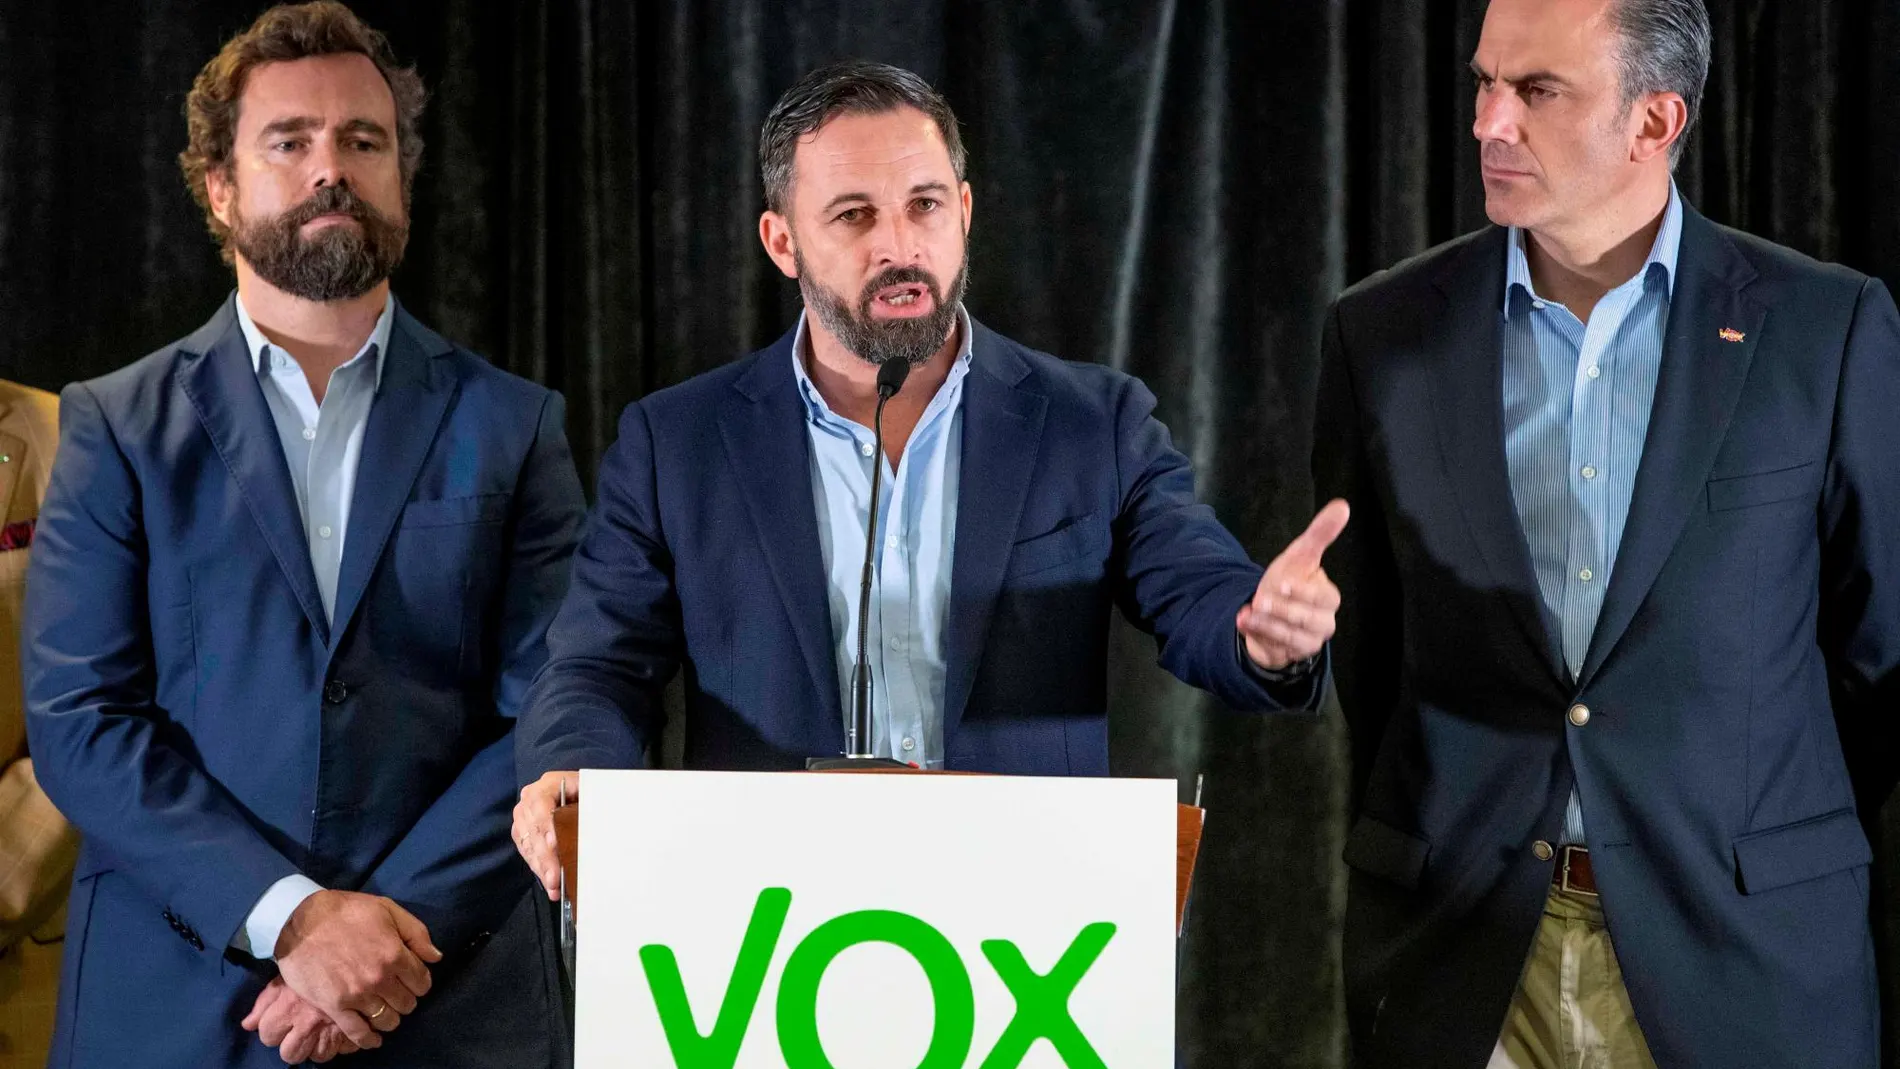 El presidente de Vox Santiago Abascal (c) acompañado por el secretario general Javier Ortega Smith (d) y el responsable del comité negociador Iván Espinosa de los Monteros (i), durante l una rueda de prensa